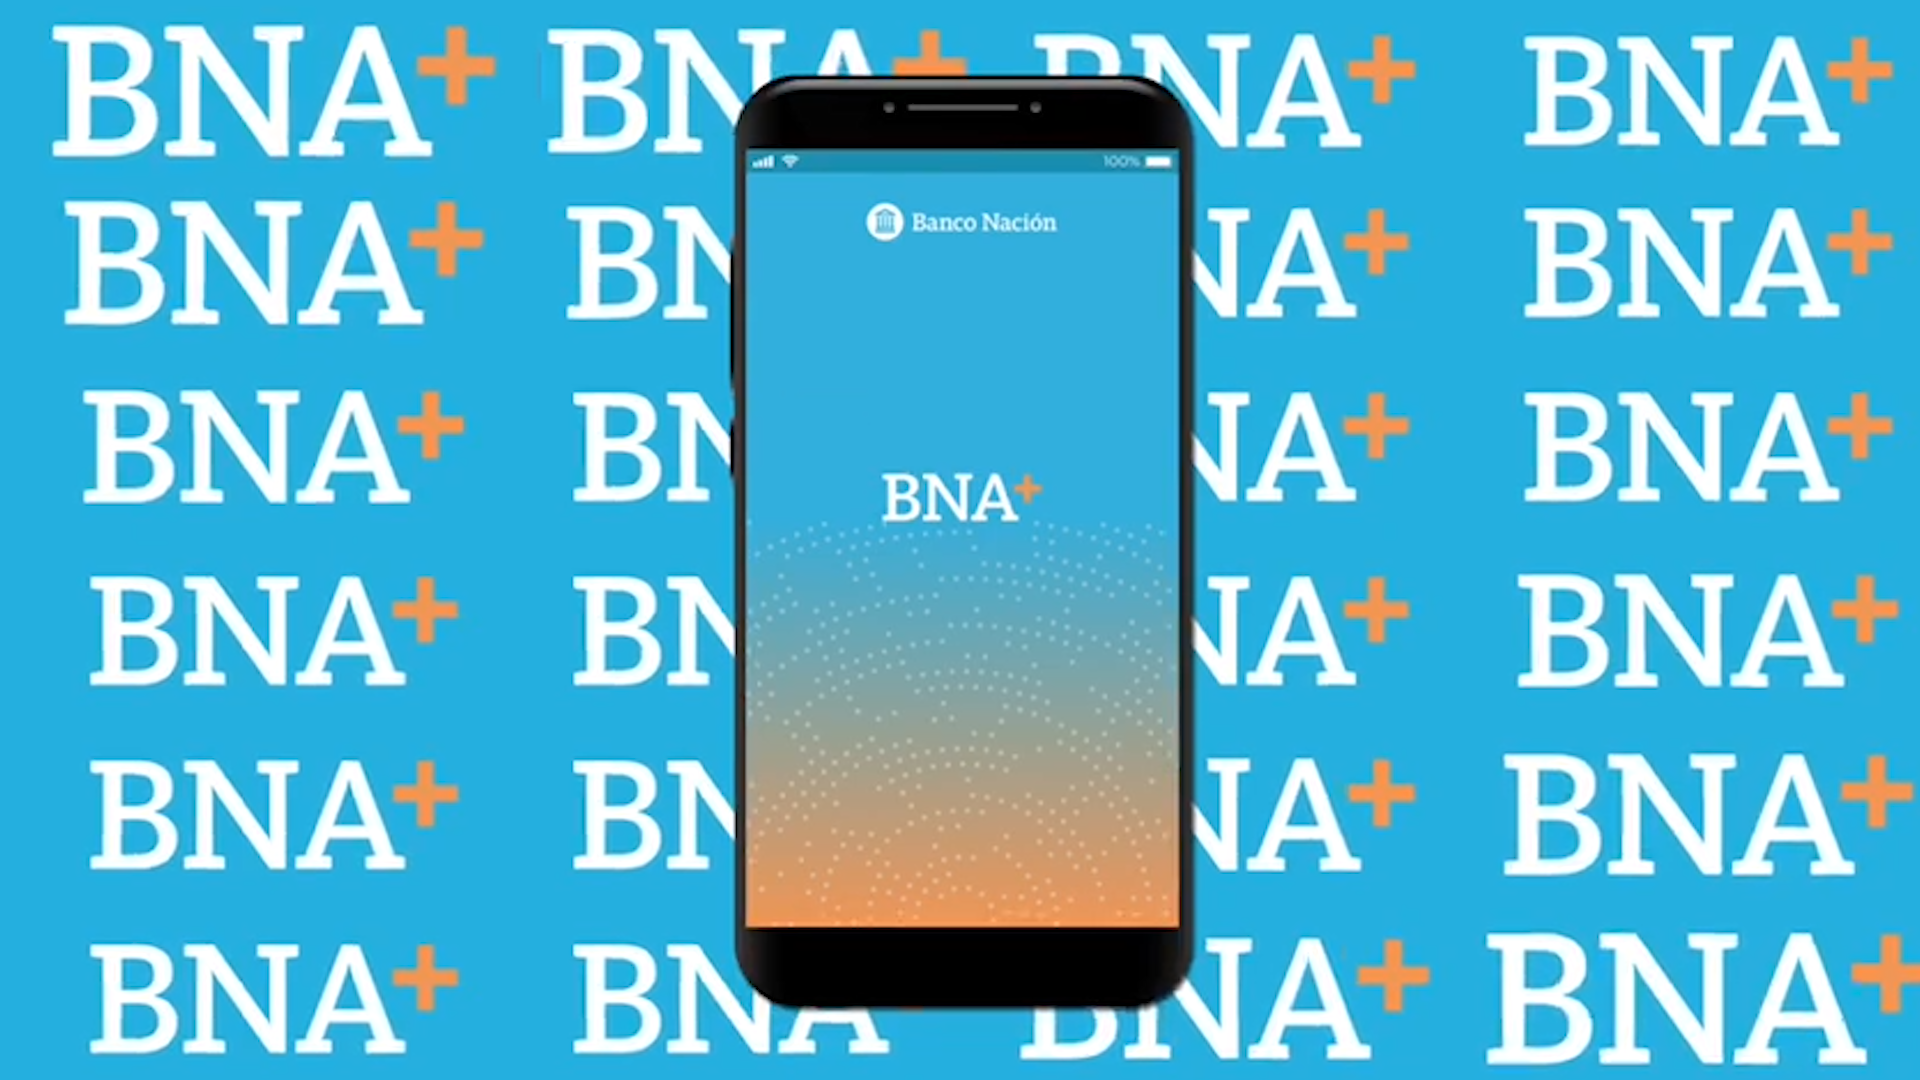 El Banco Nación presentó BNA+, su billetera digital que facilitará el cobro del Ingreso Familiar de Emergencia (IFE).